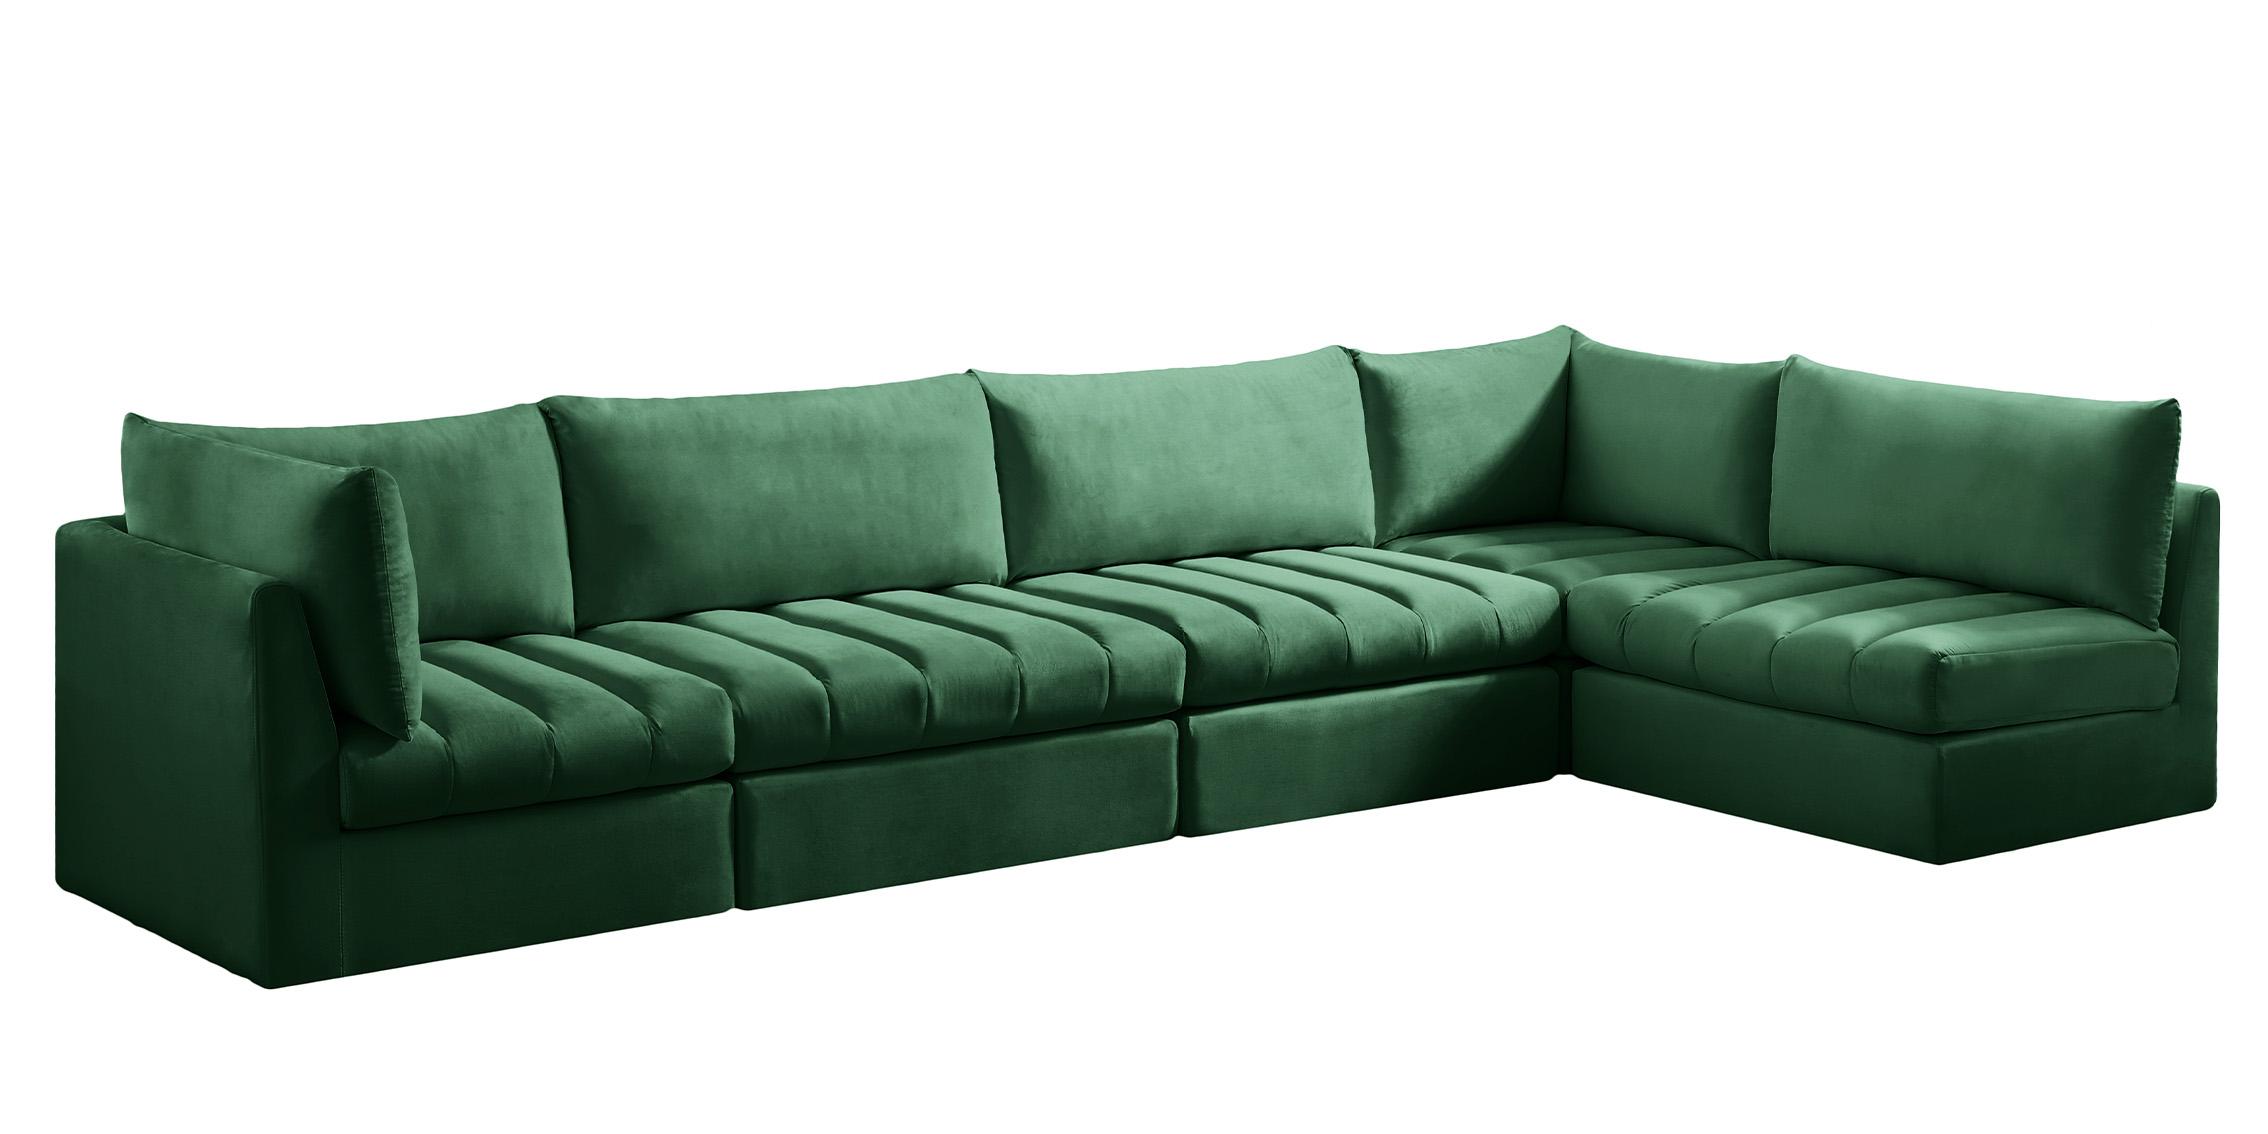 Meridian Furniture JACOB 649Green-Sec5A Modular Sectional Sofa